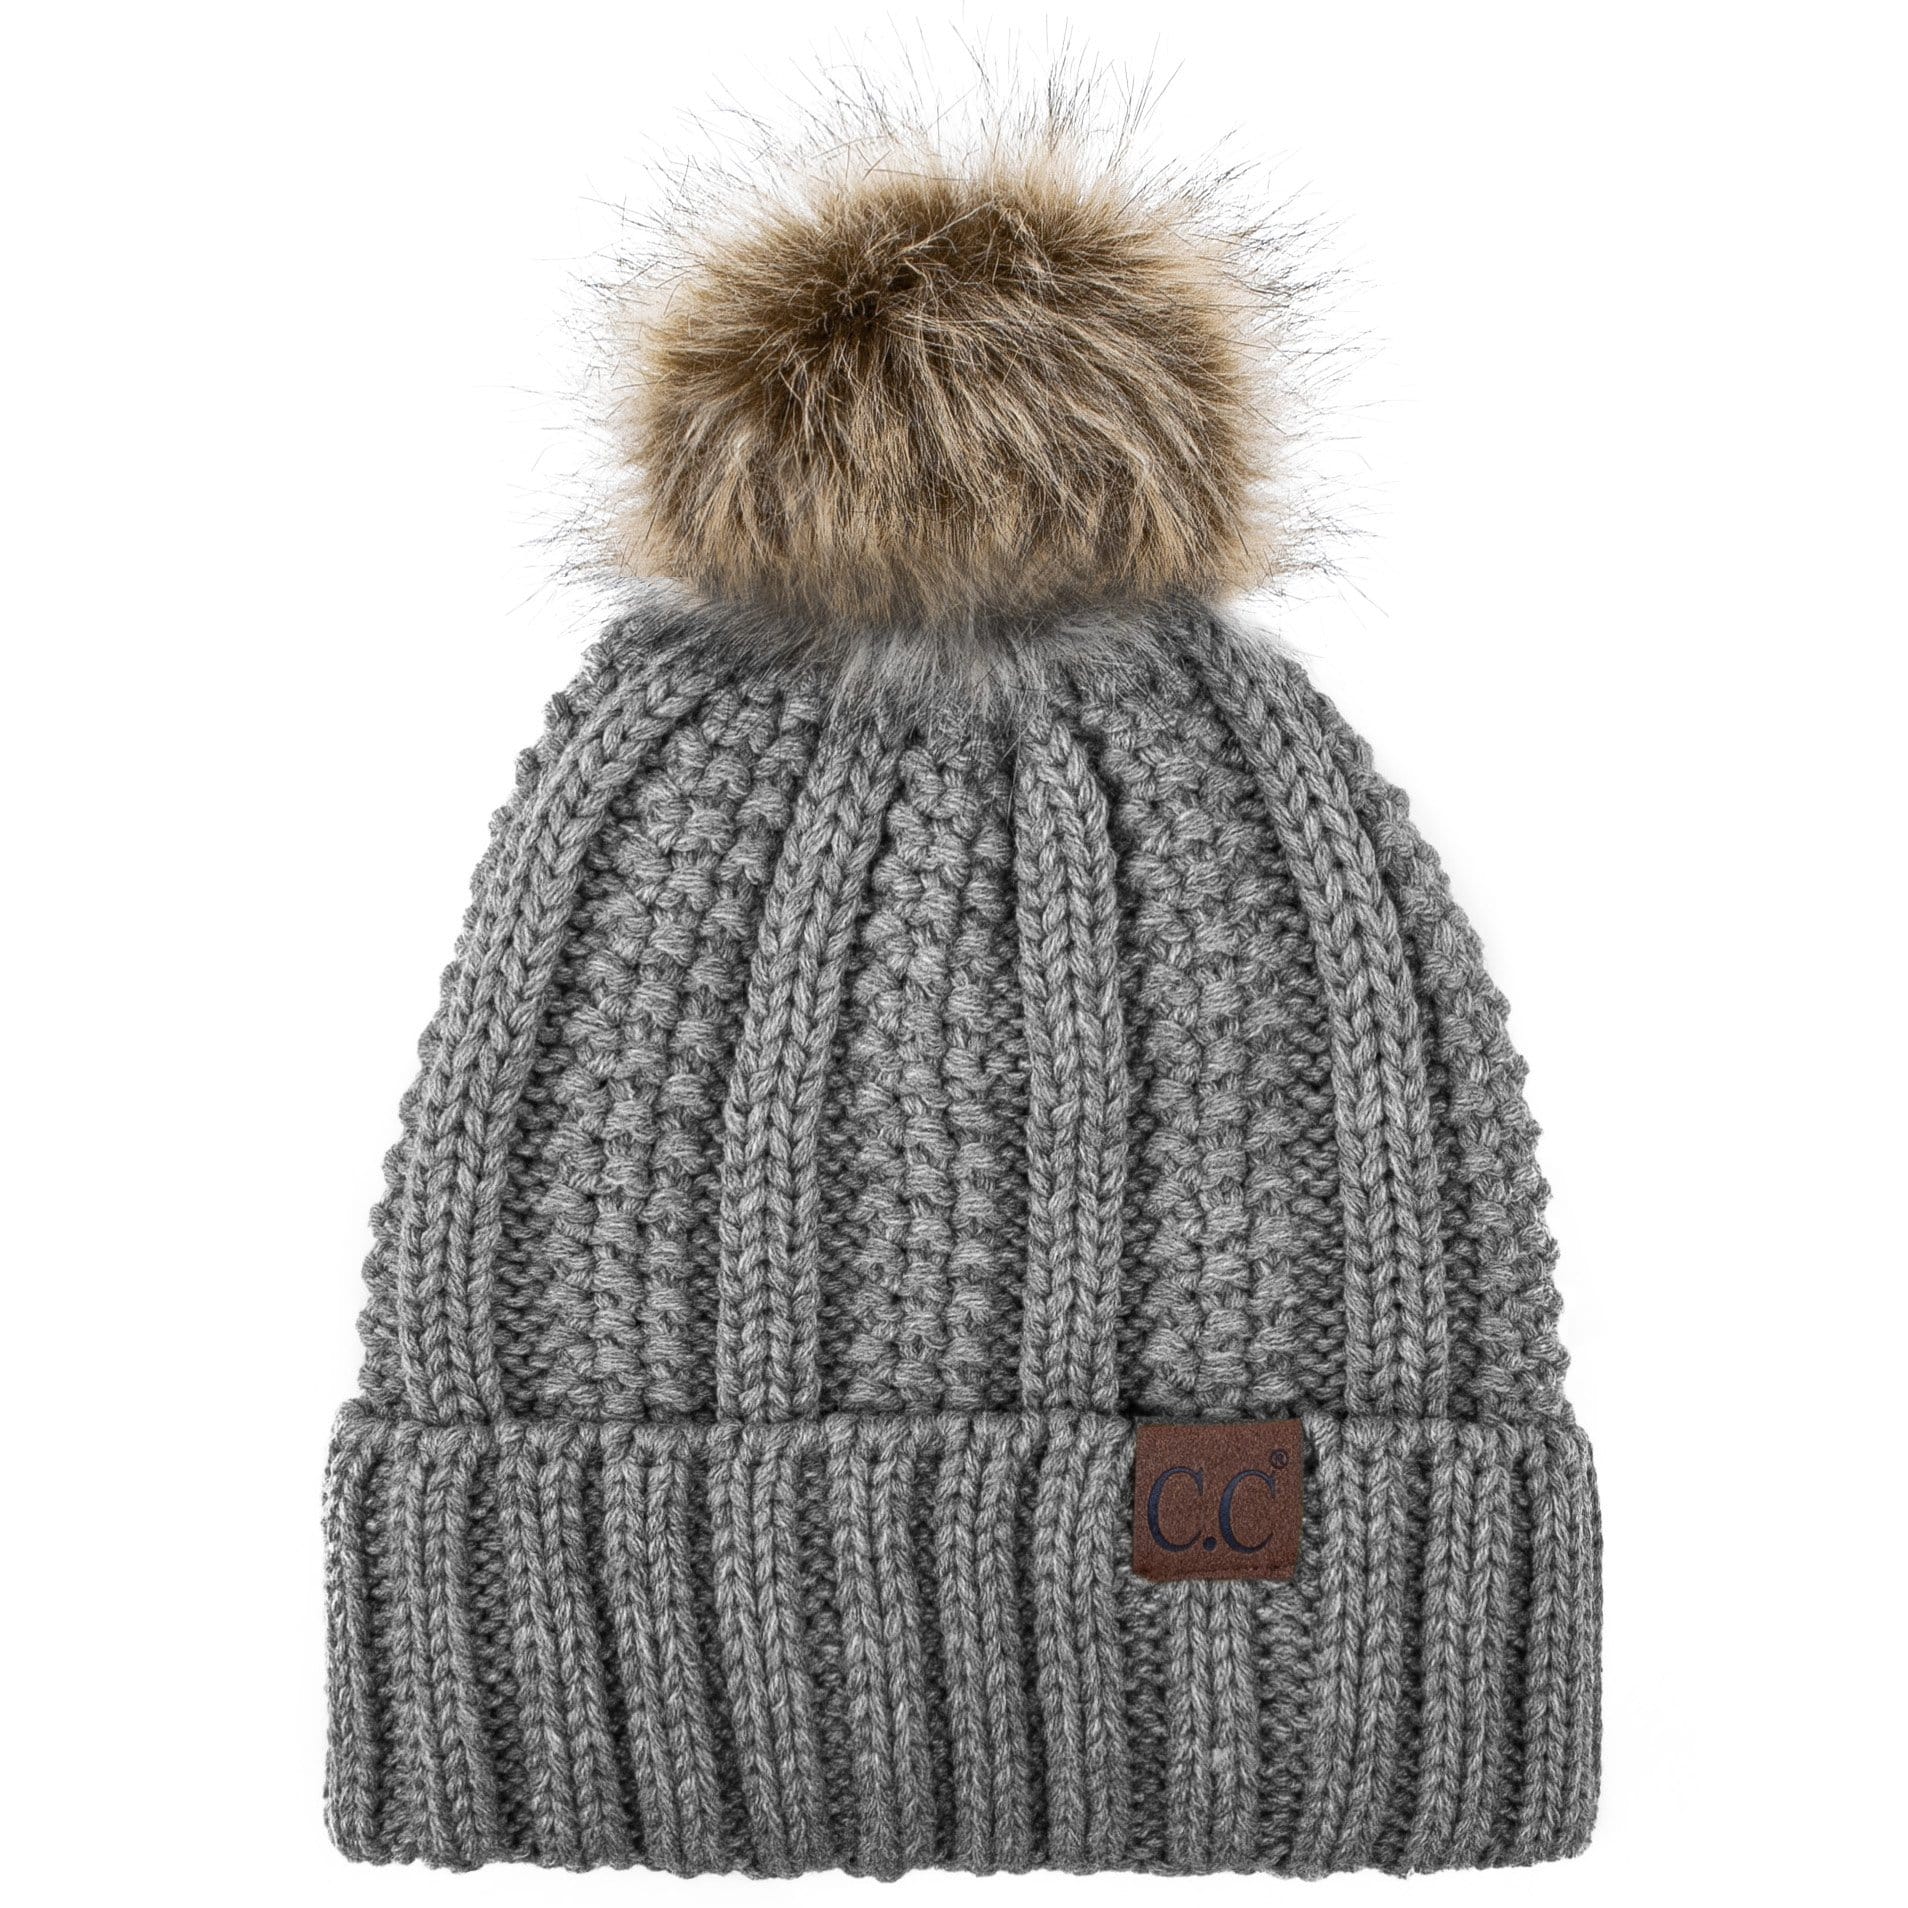 Fashion Knit Beanie Pom Pom Hat, SKU: H112-GRY